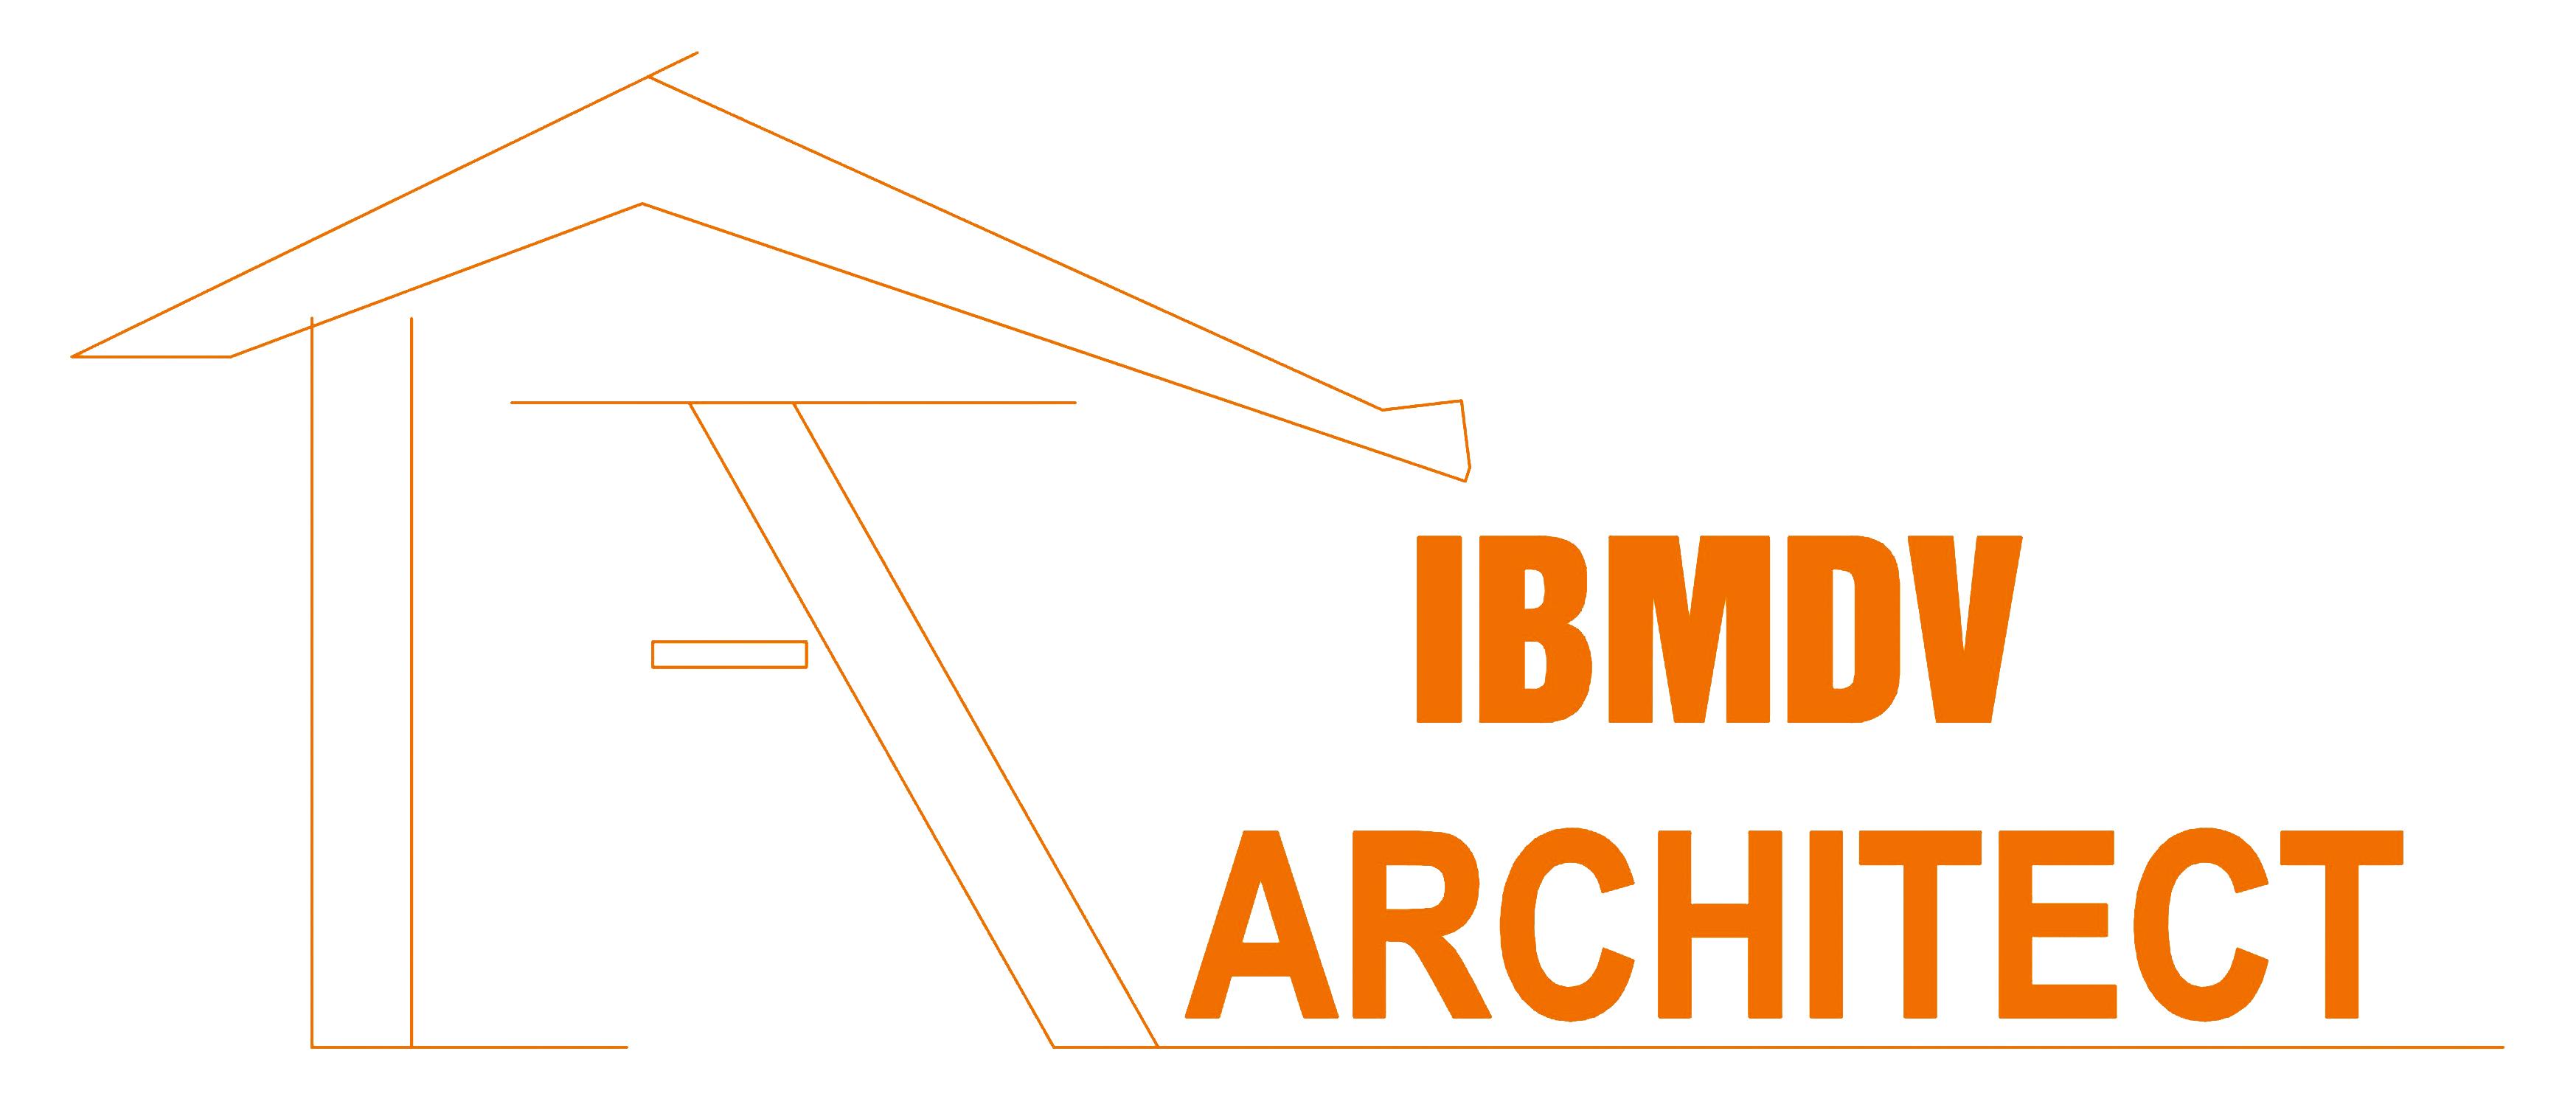  				Công ty cổ phần kiến trúc và xây dựng IBMDV				